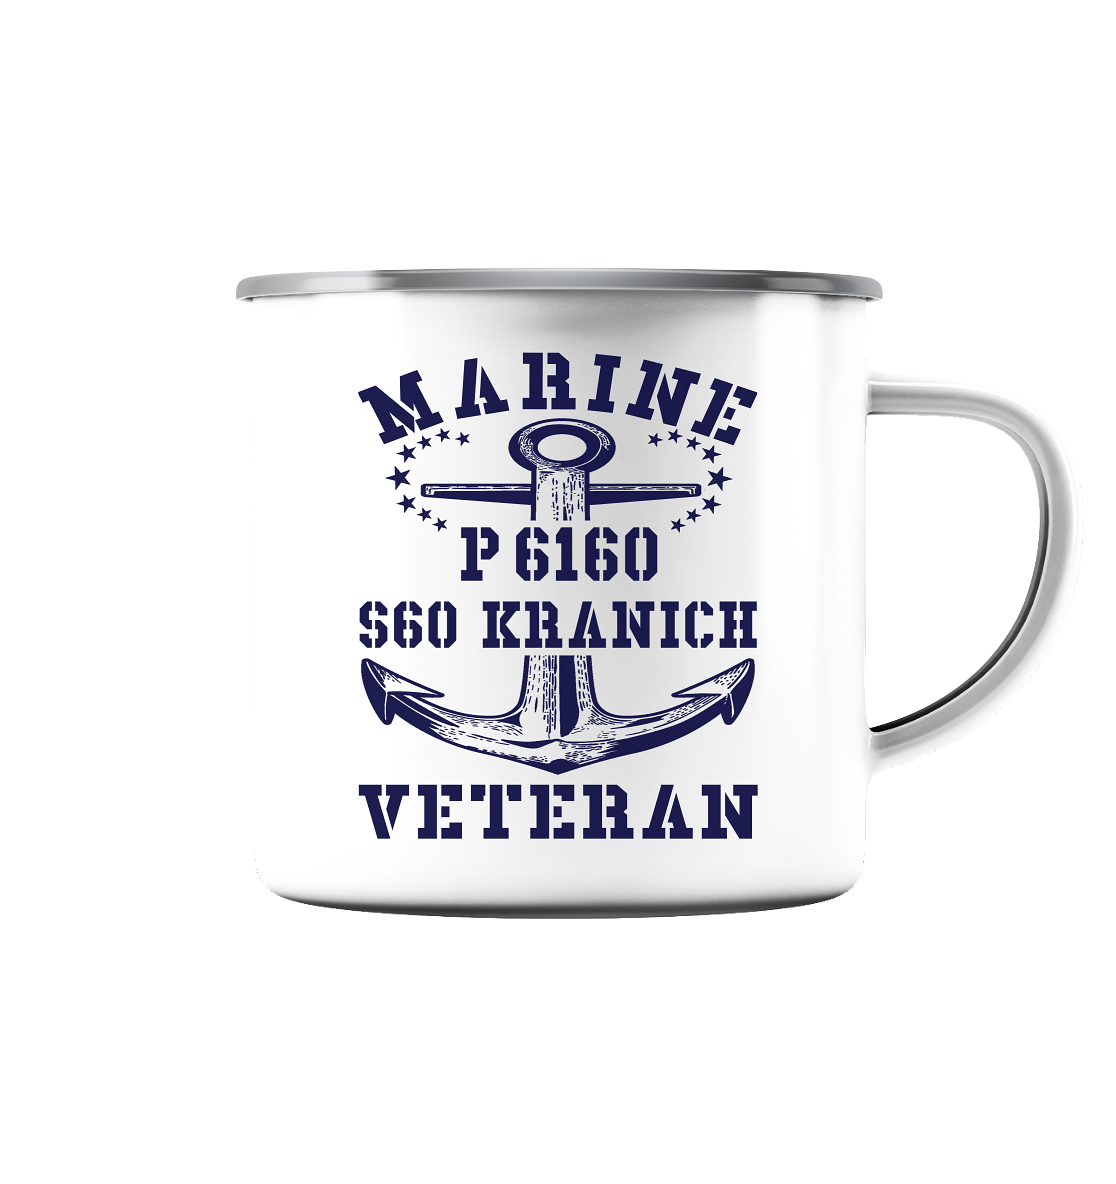 P6160 S60 KRANICH Marine Veteran - Emaille Tasse (Silber)